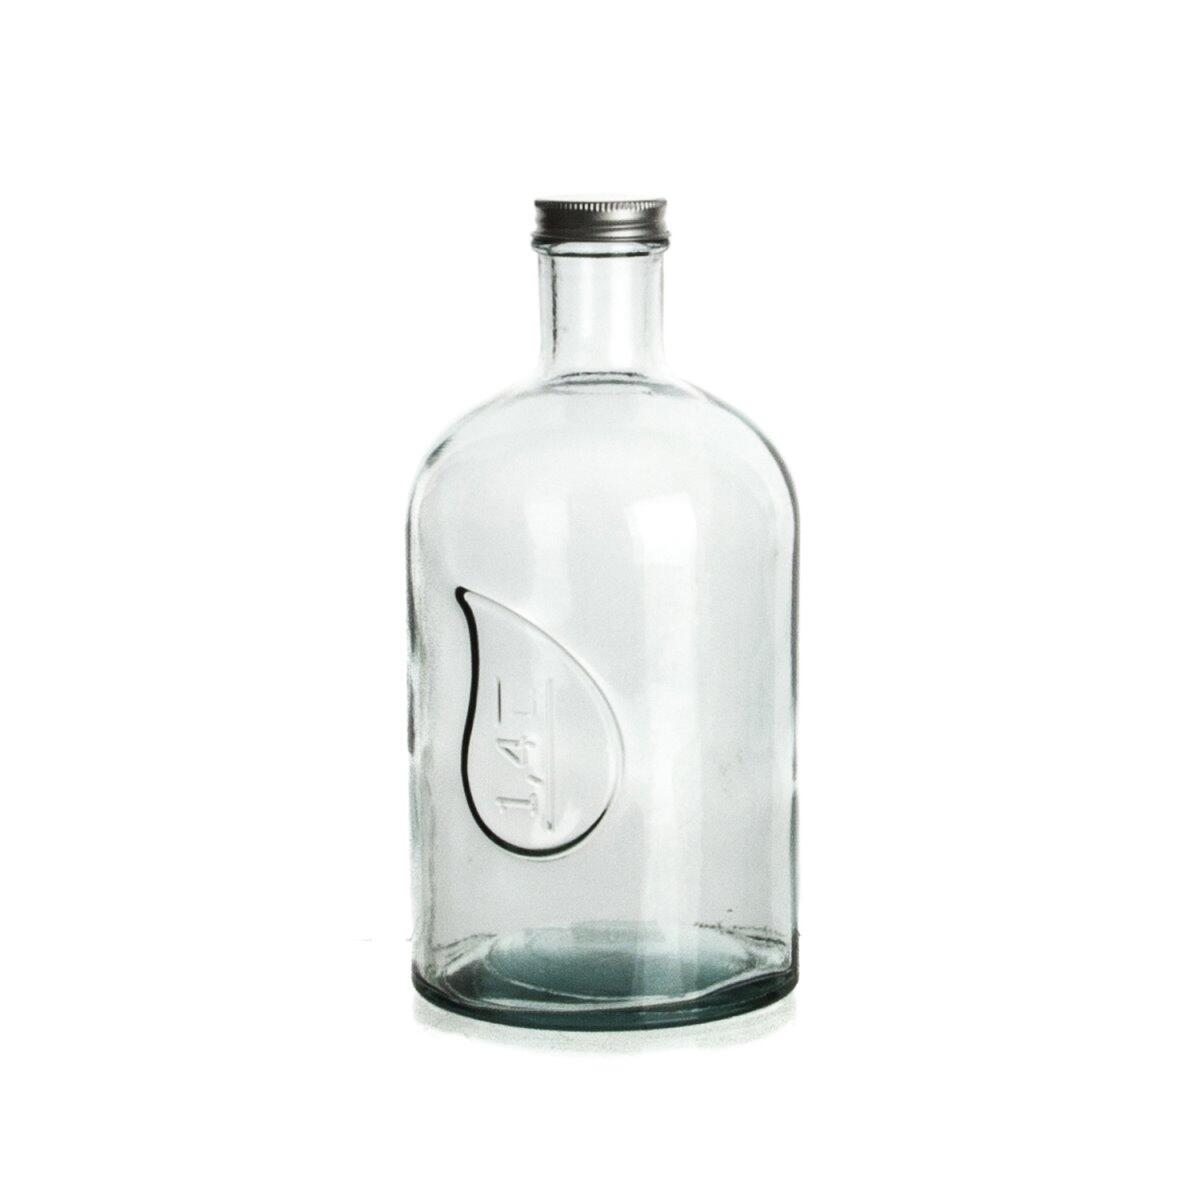 Sanmiguel Bottle with Metal Cap 1400 ml